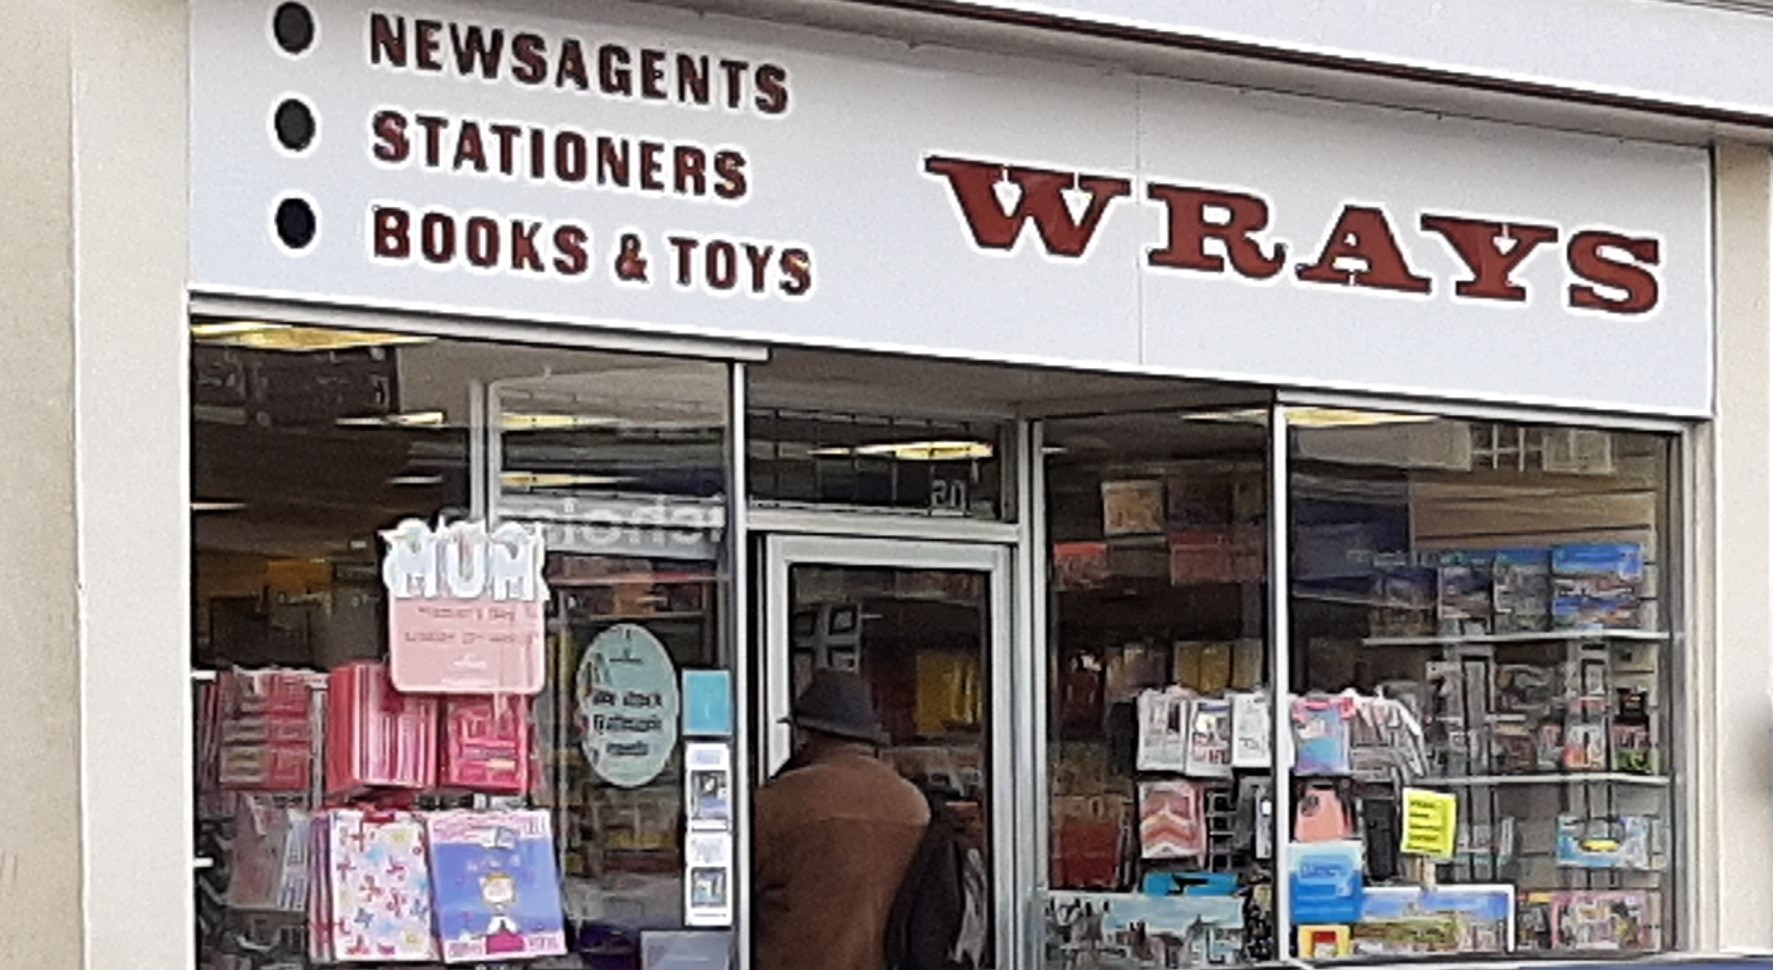 Wrays Bookshop, Filey